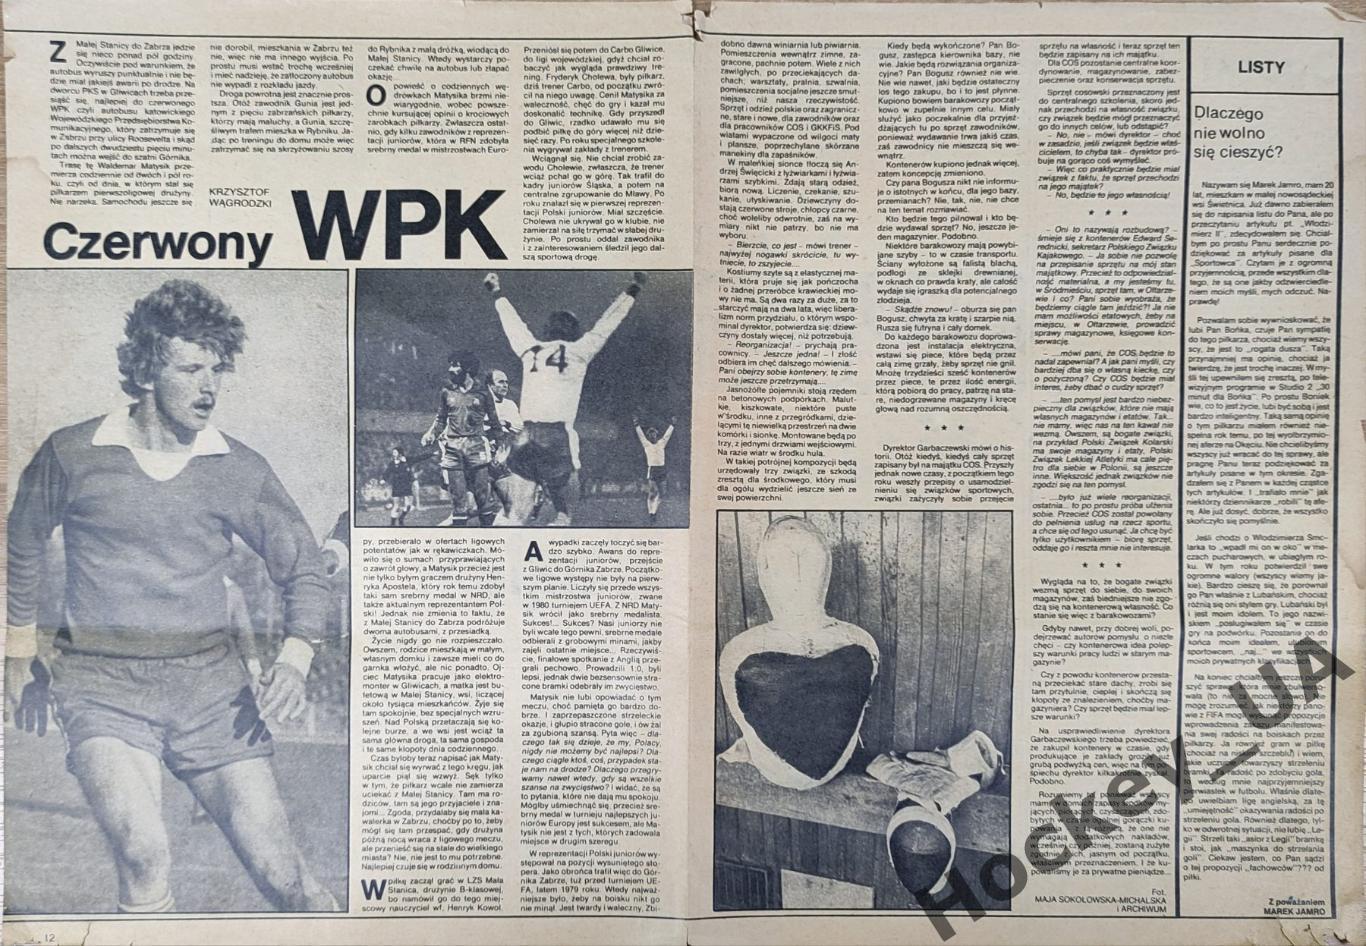 Журнал Sportowiec №49 9.12.1981 г. 2